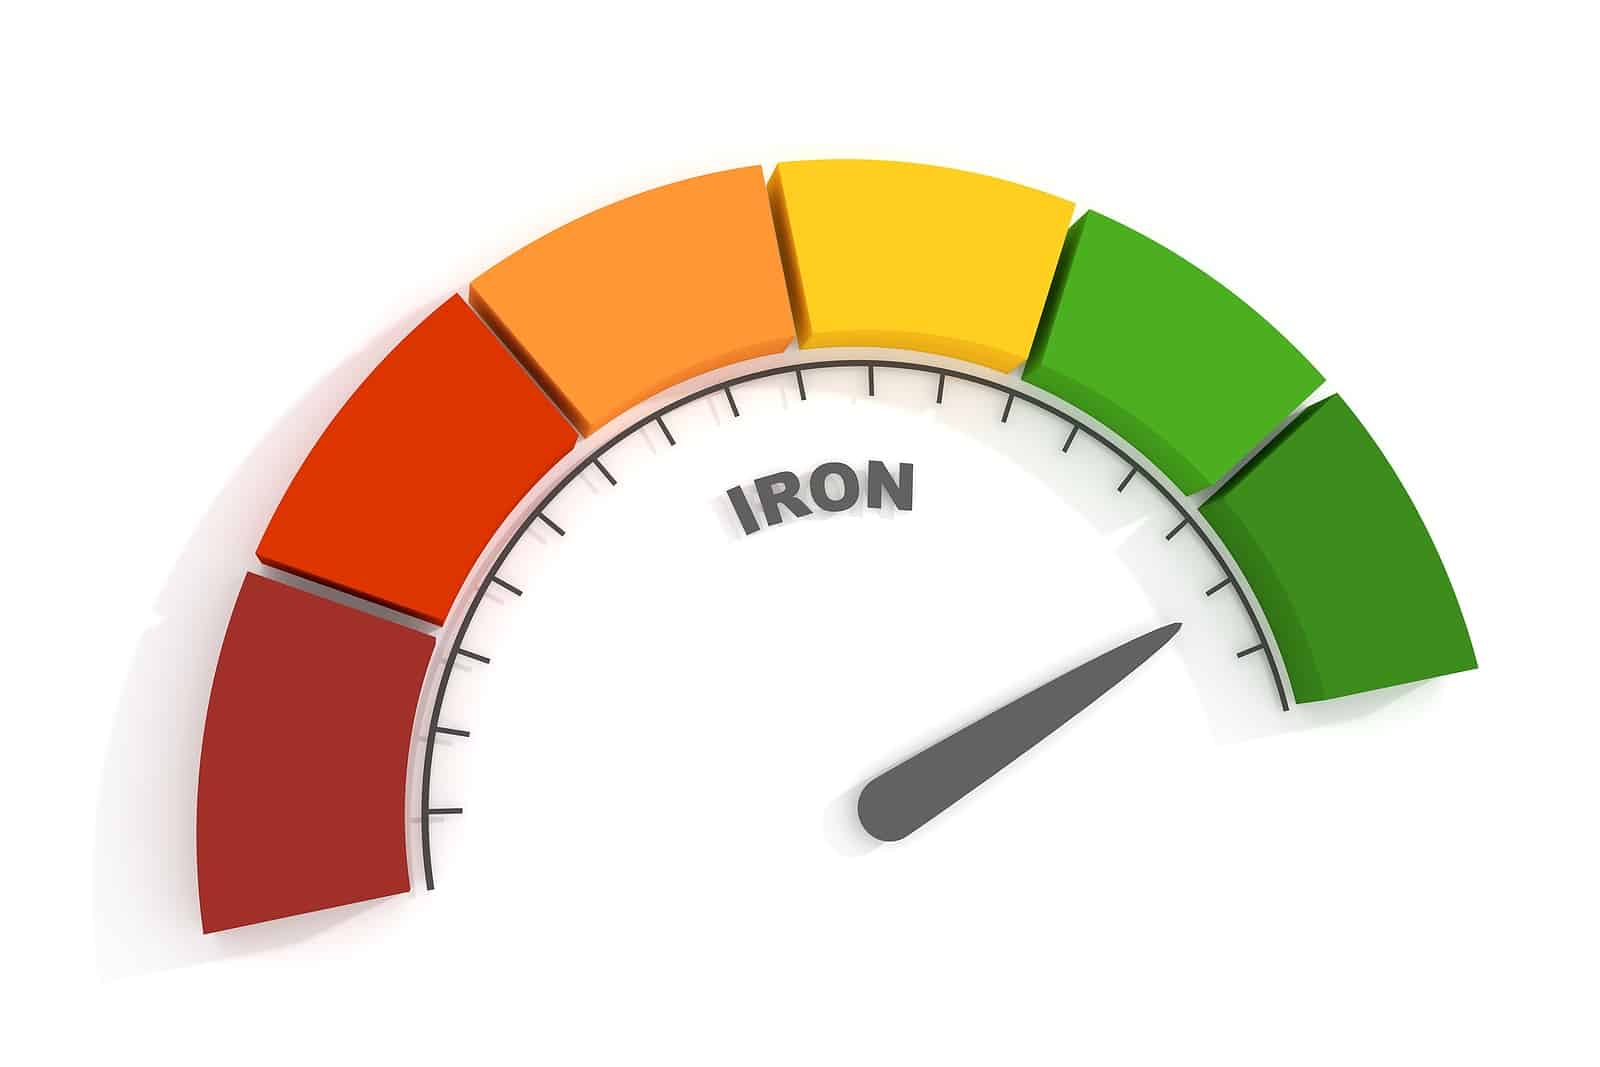 Iron Level 